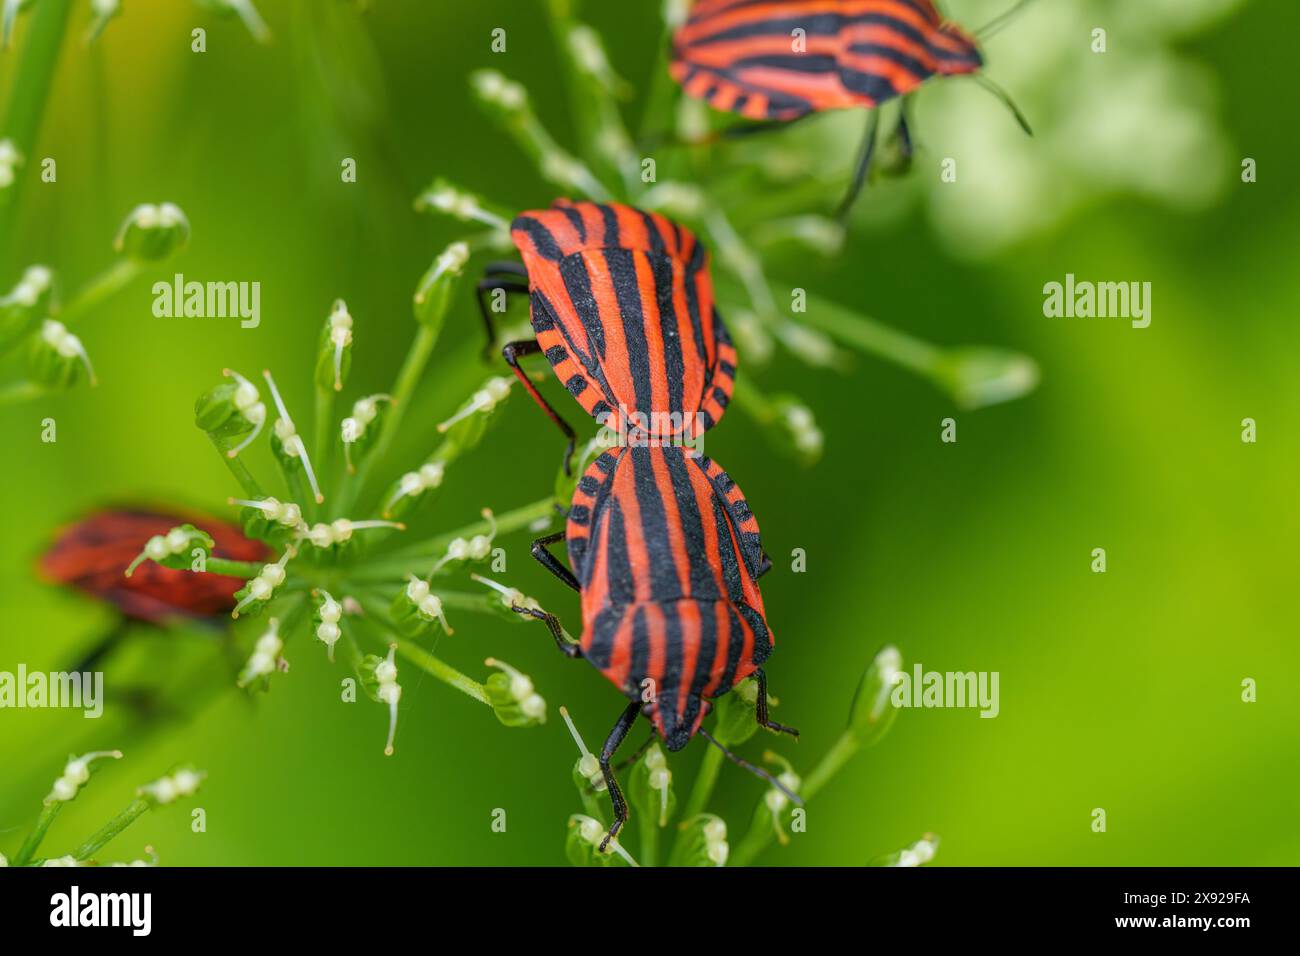 Deux insectes rayés rouges et noirs sont perchés sur une plante, agissant peut-être comme pollinisateurs sur une plante à fleurs terrestre dans une zone herbeuse Banque D'Images